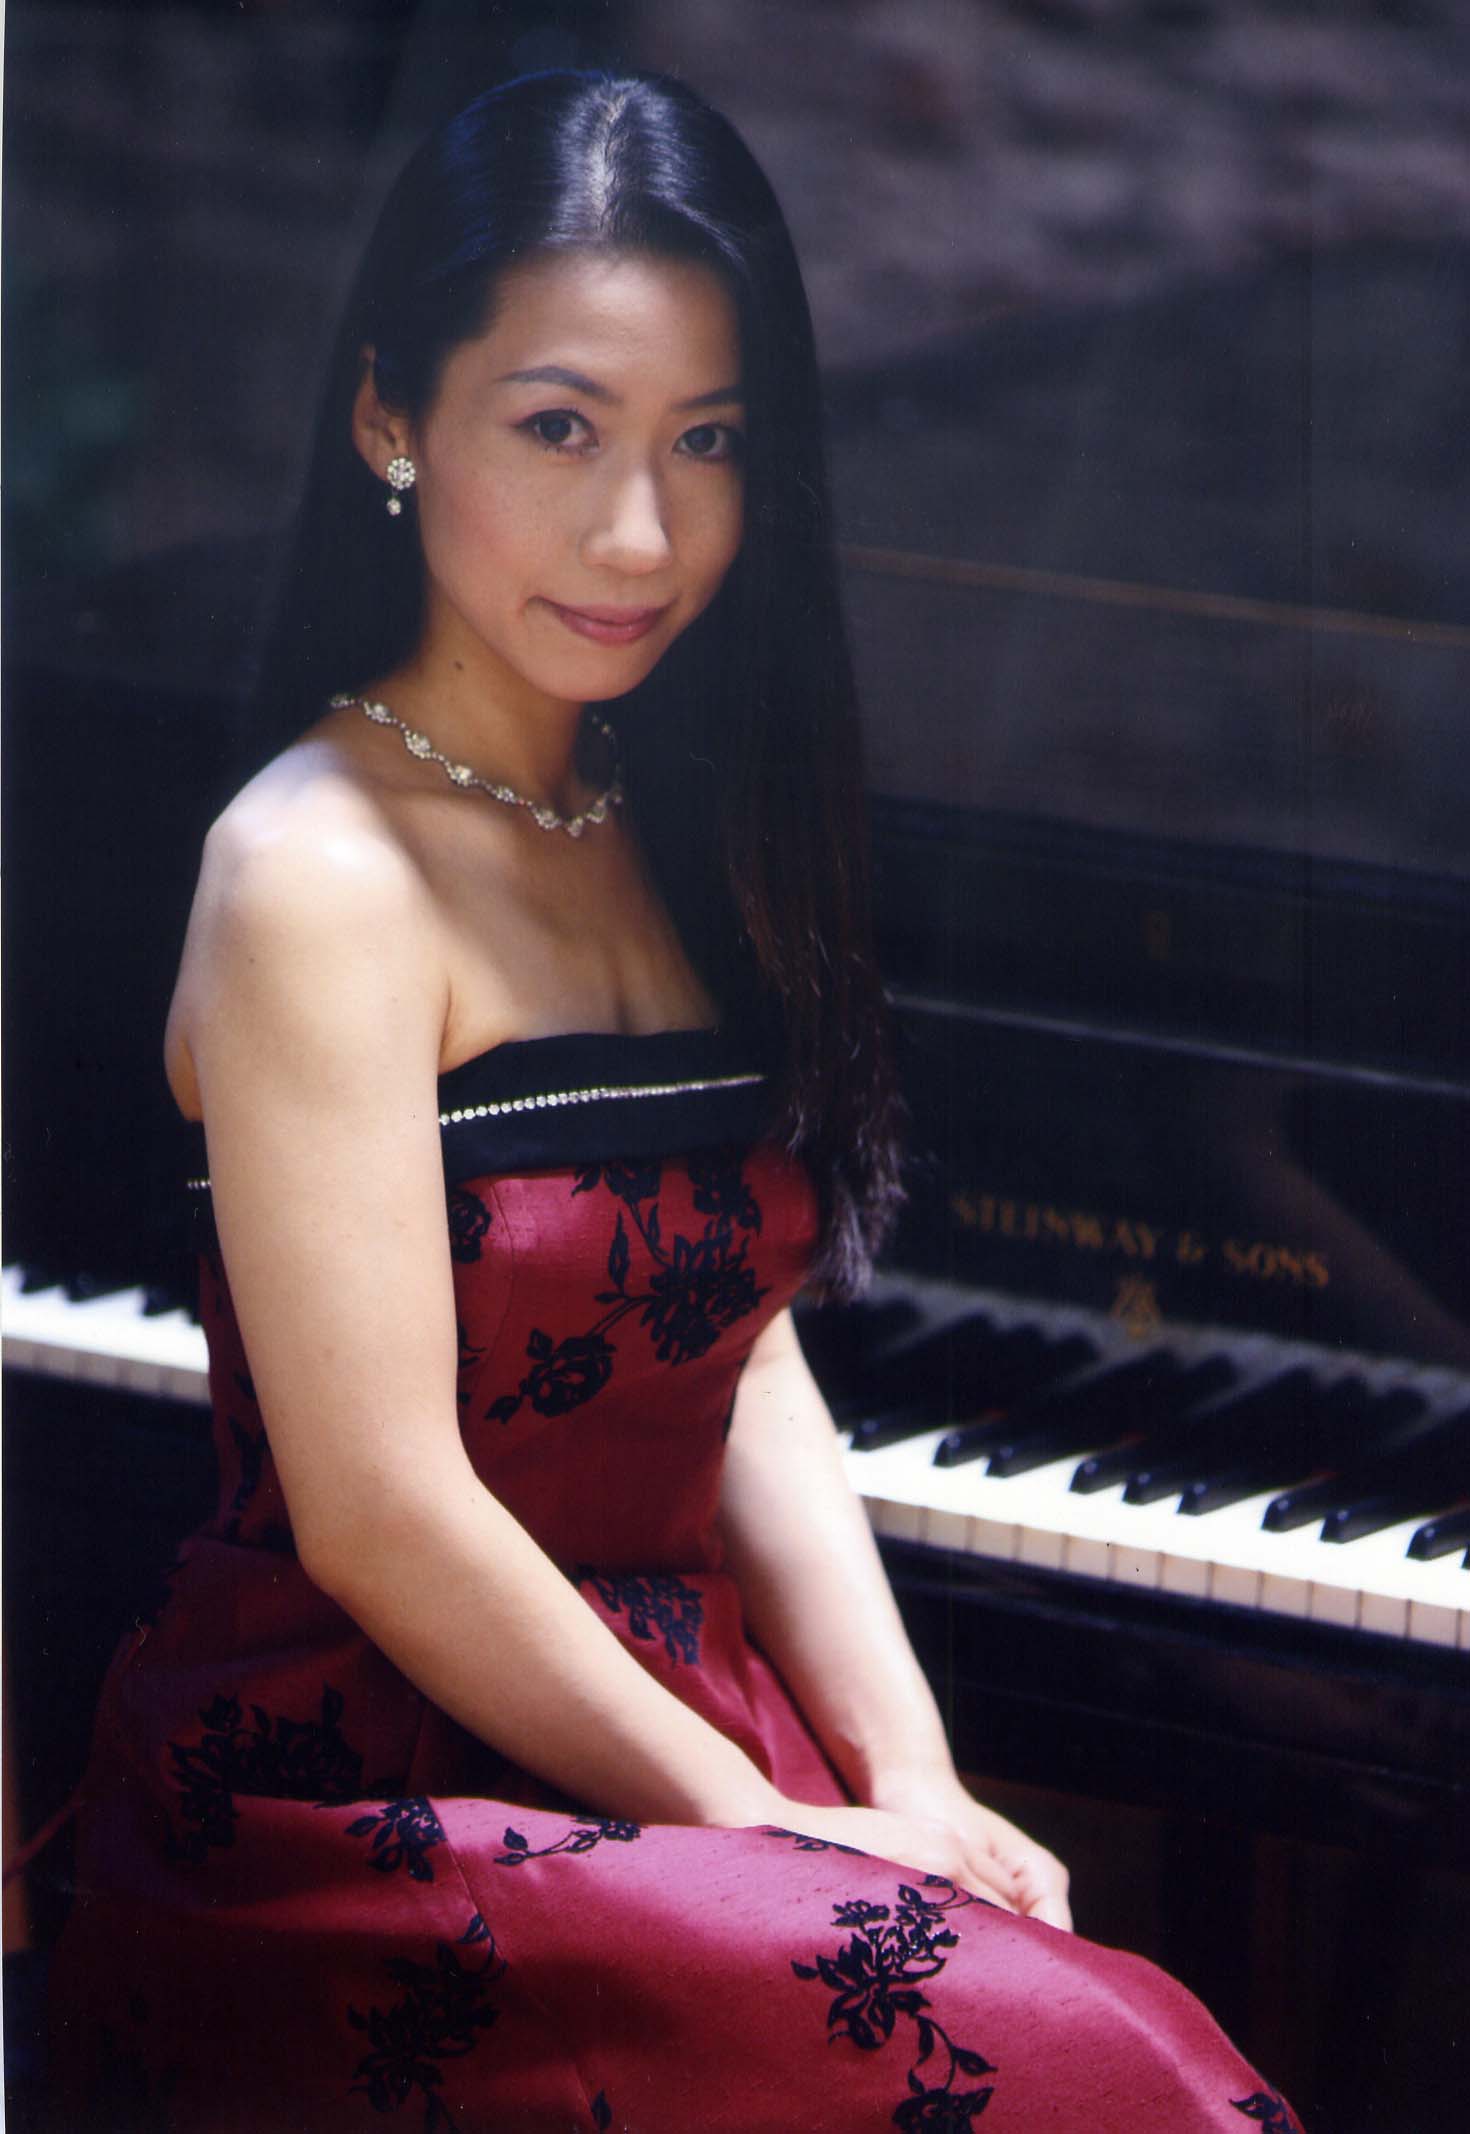 La pianista Ryoku Yokoyama